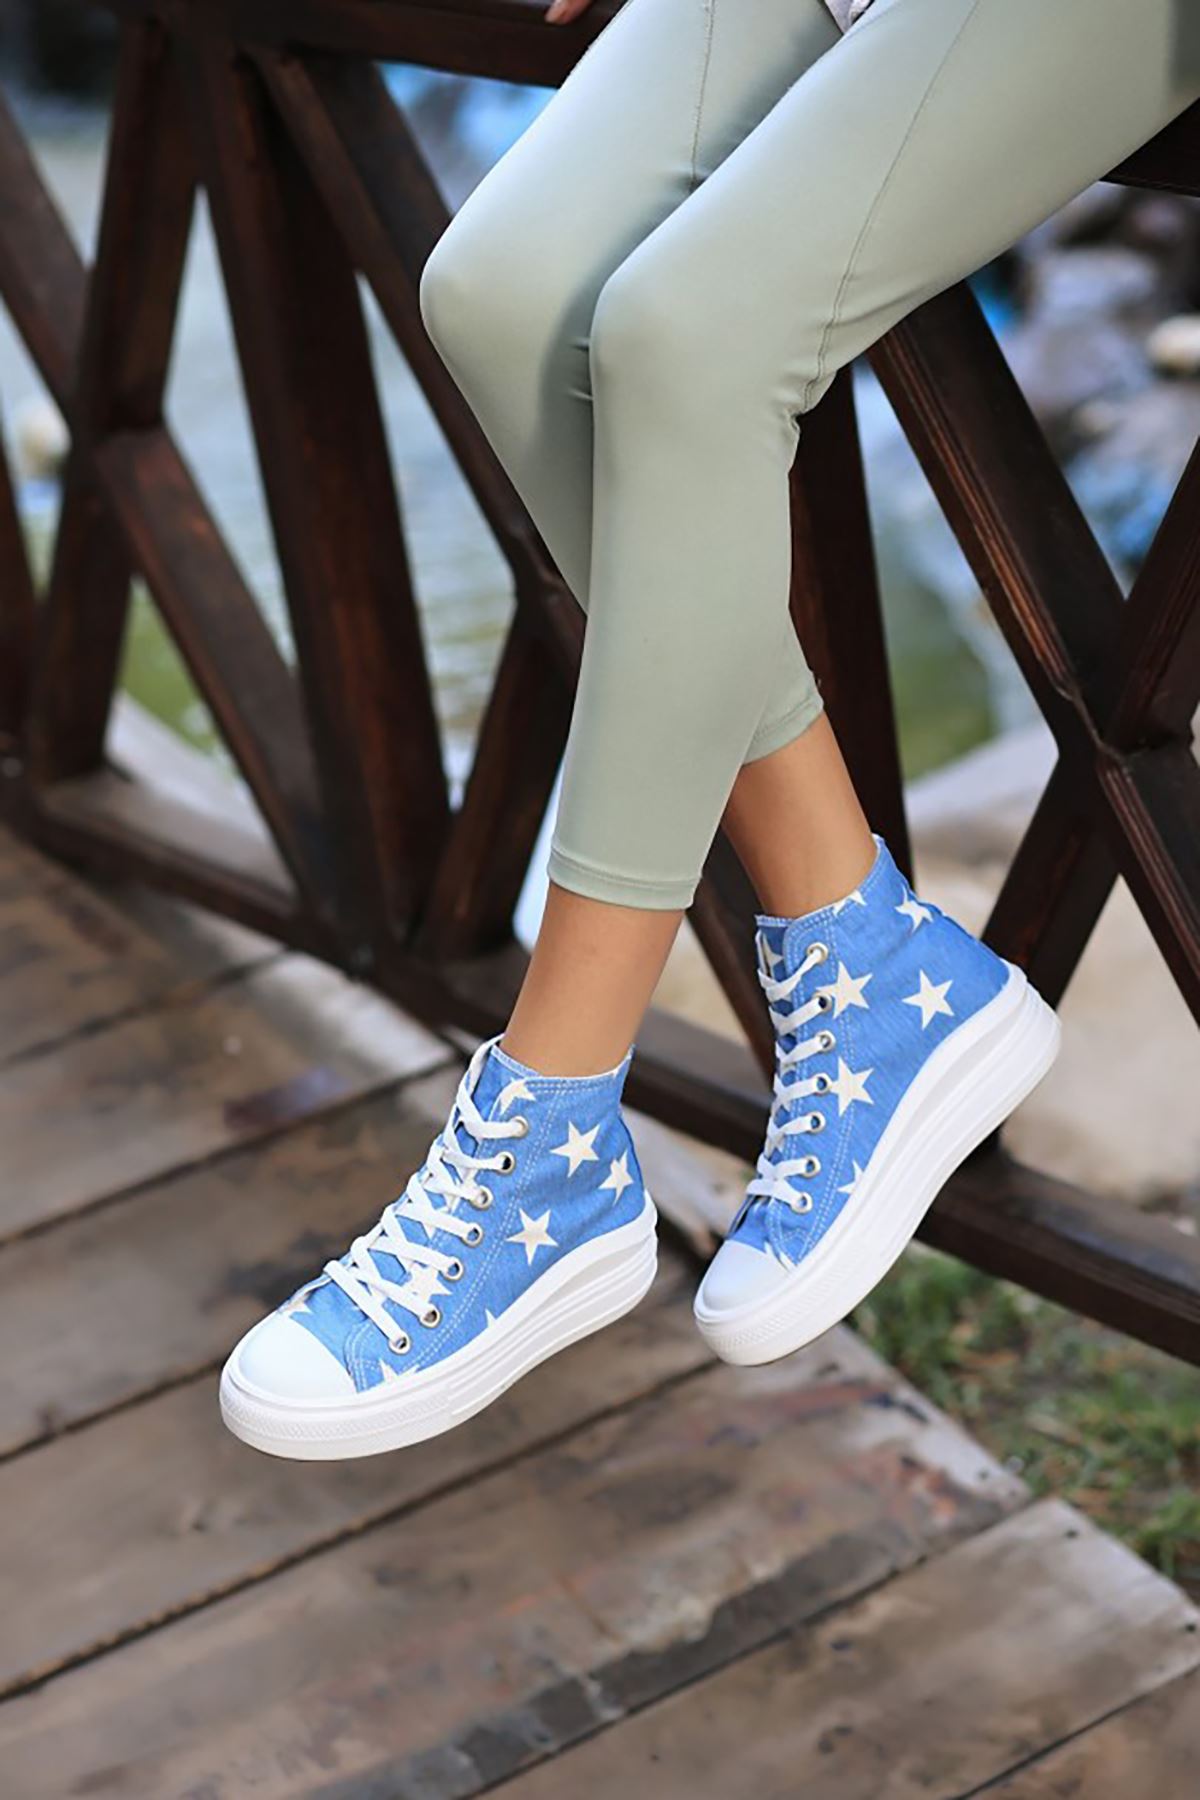 ERBNİKY Bebe Mavisi Kot Yıldızlı Bayan Bağcıklı Spor Ayakkabı